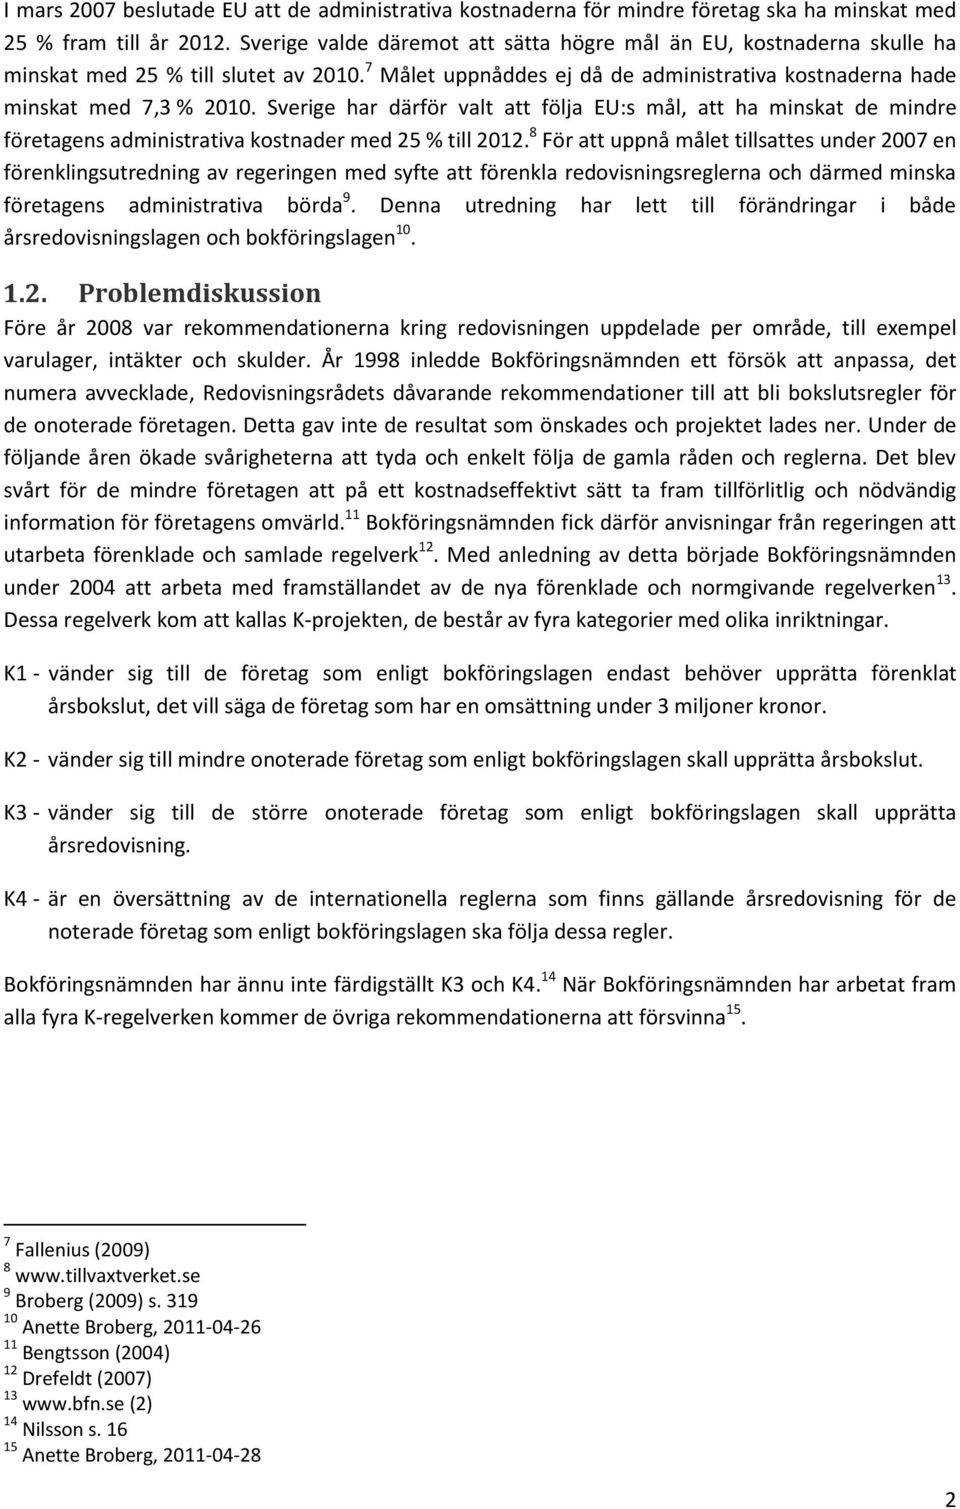 Sverige har därför valt att följa EU:s mål, att ha minskat de mindre företagens administrativa kostnader med 25 % till 2012.